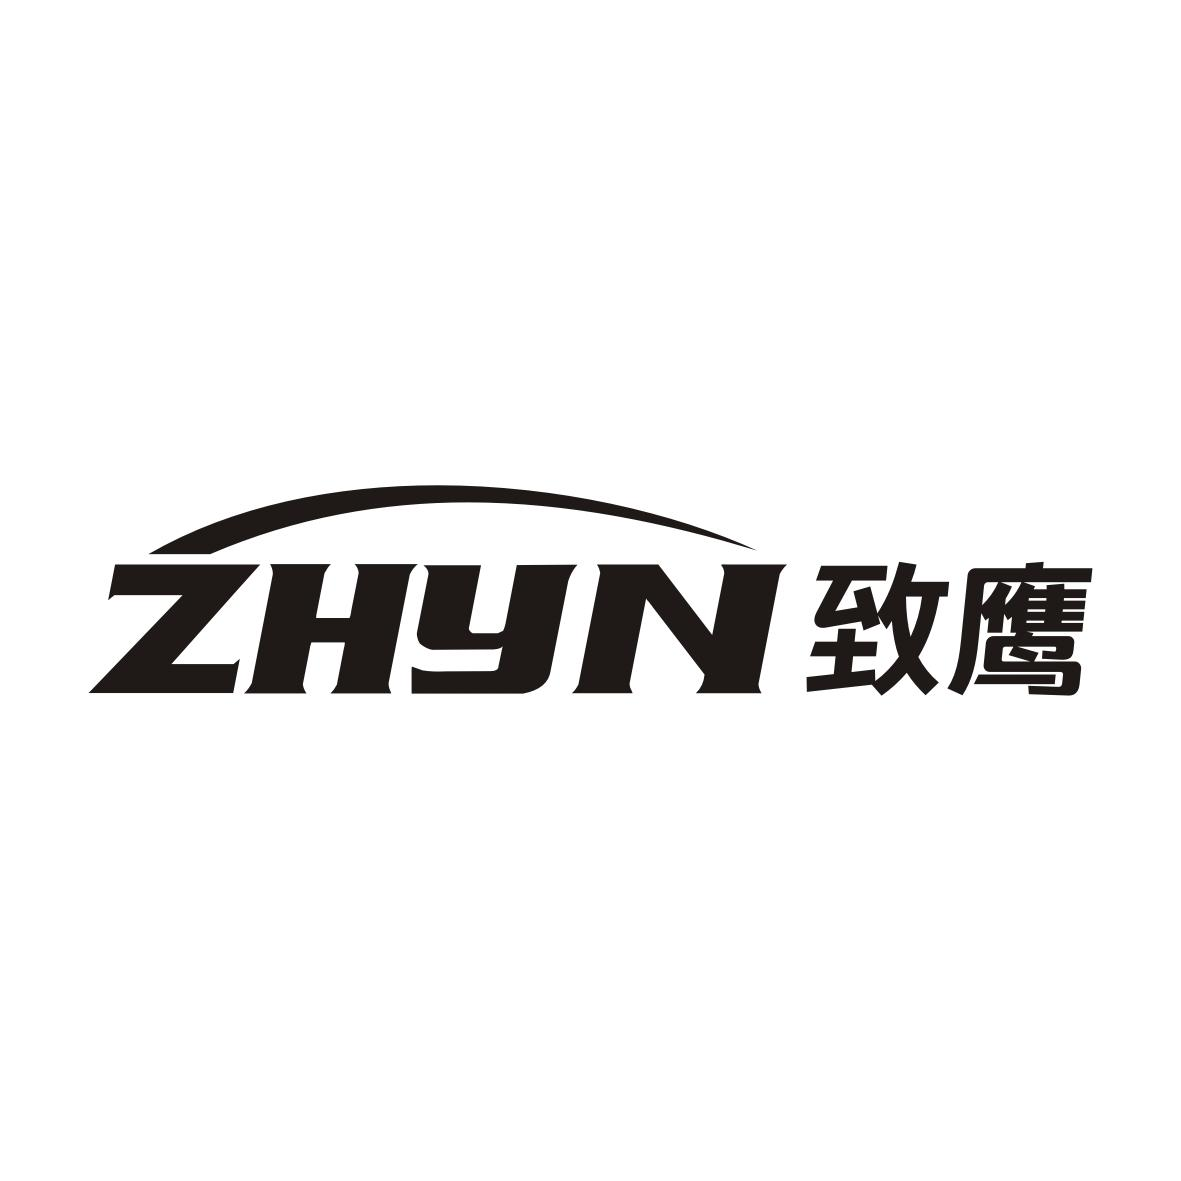 转让商标-ZHYN 致鹰